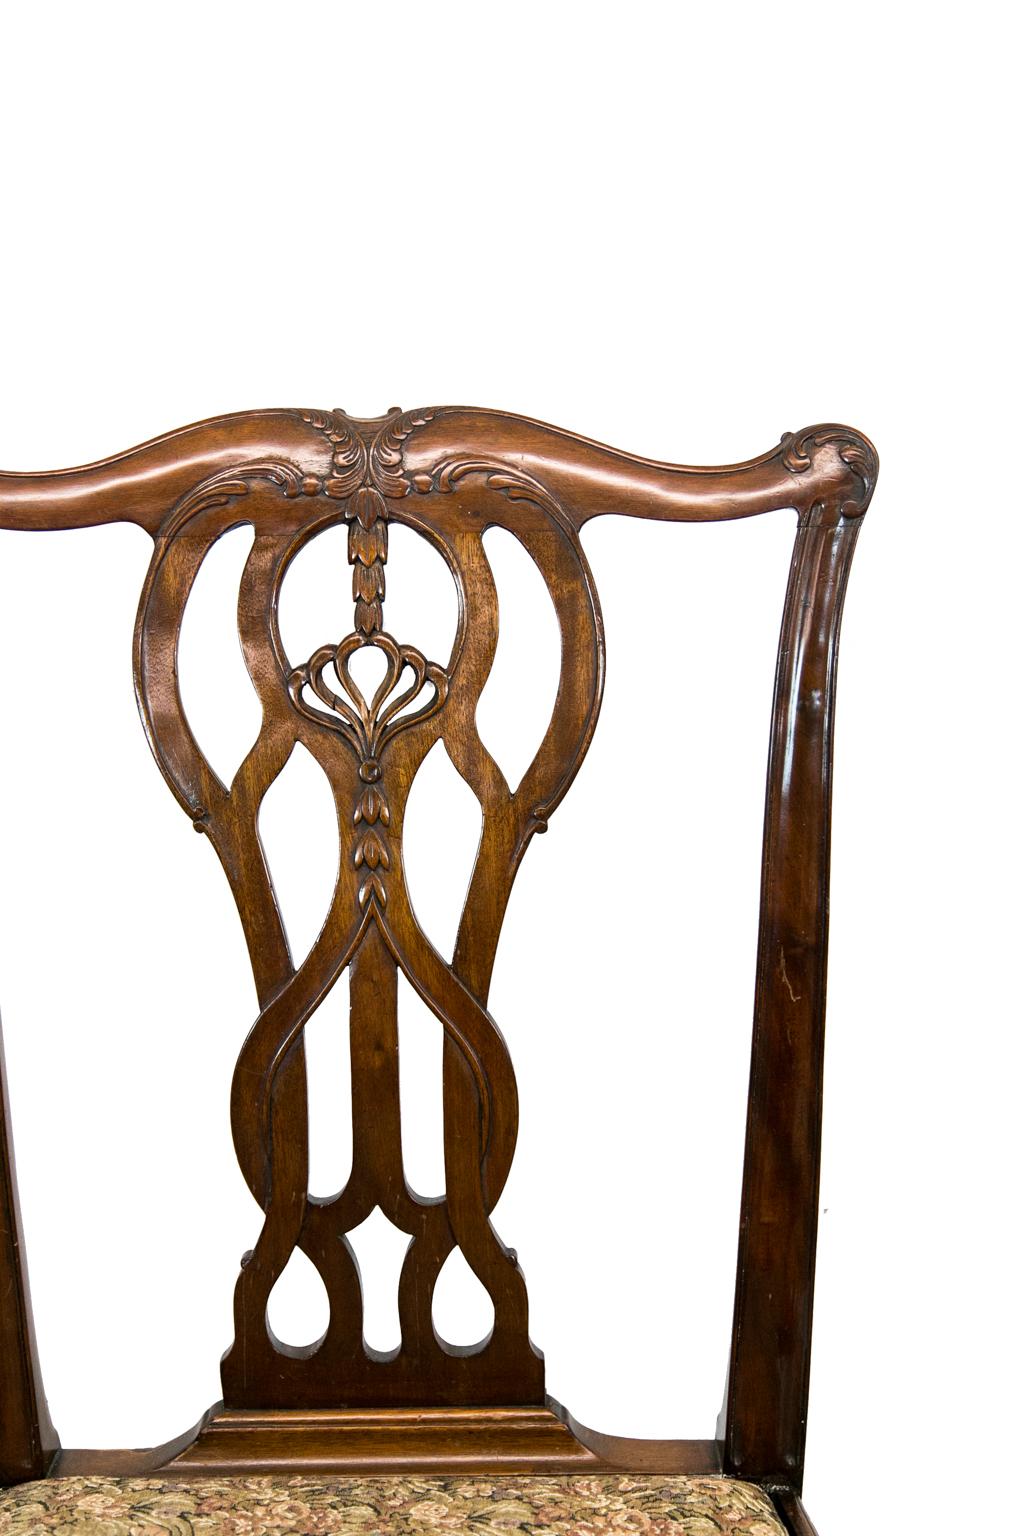 Ensemble de huit chaises de style Chippendale, avec deux bras et six côtés. Elles sont sculptées d'éclisses entrelacées avec des sculptures de clochettes graduées dans une crête stylisée de feuilles d'acanthe. Les pieds sont sculptés de feuilles